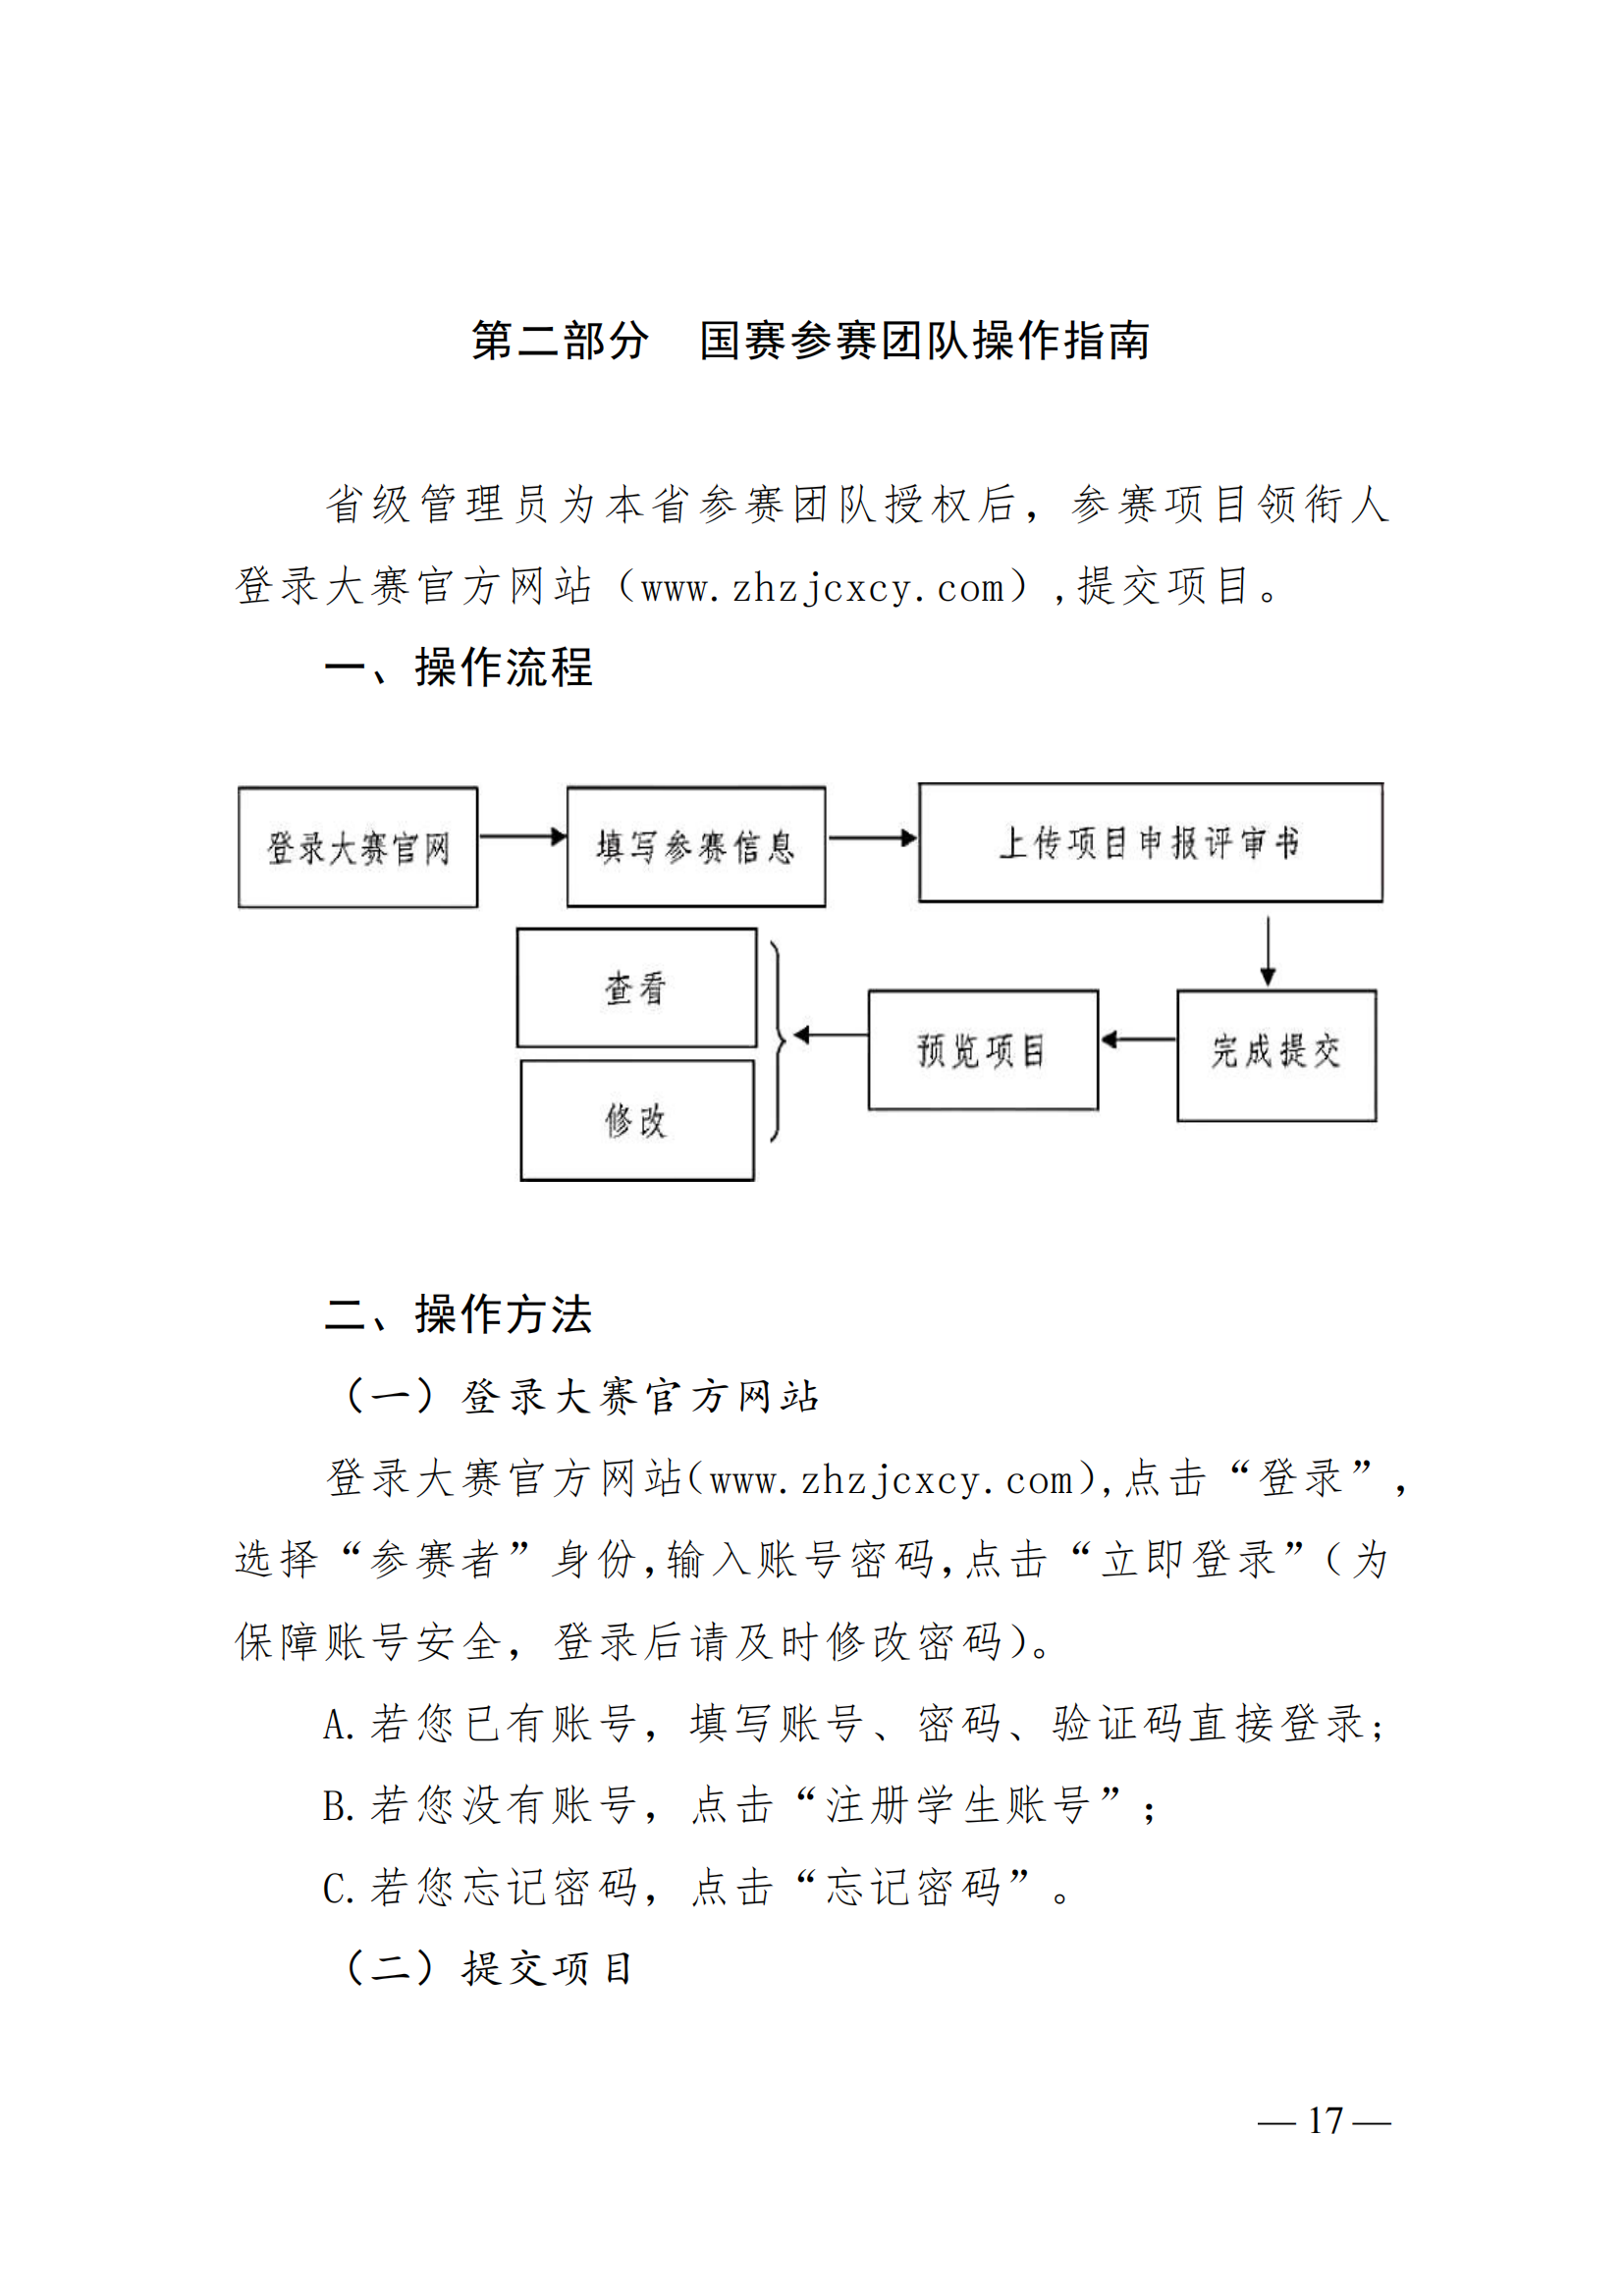 关于举办第五届中华职业教育创新创业大赛的通知(图17)